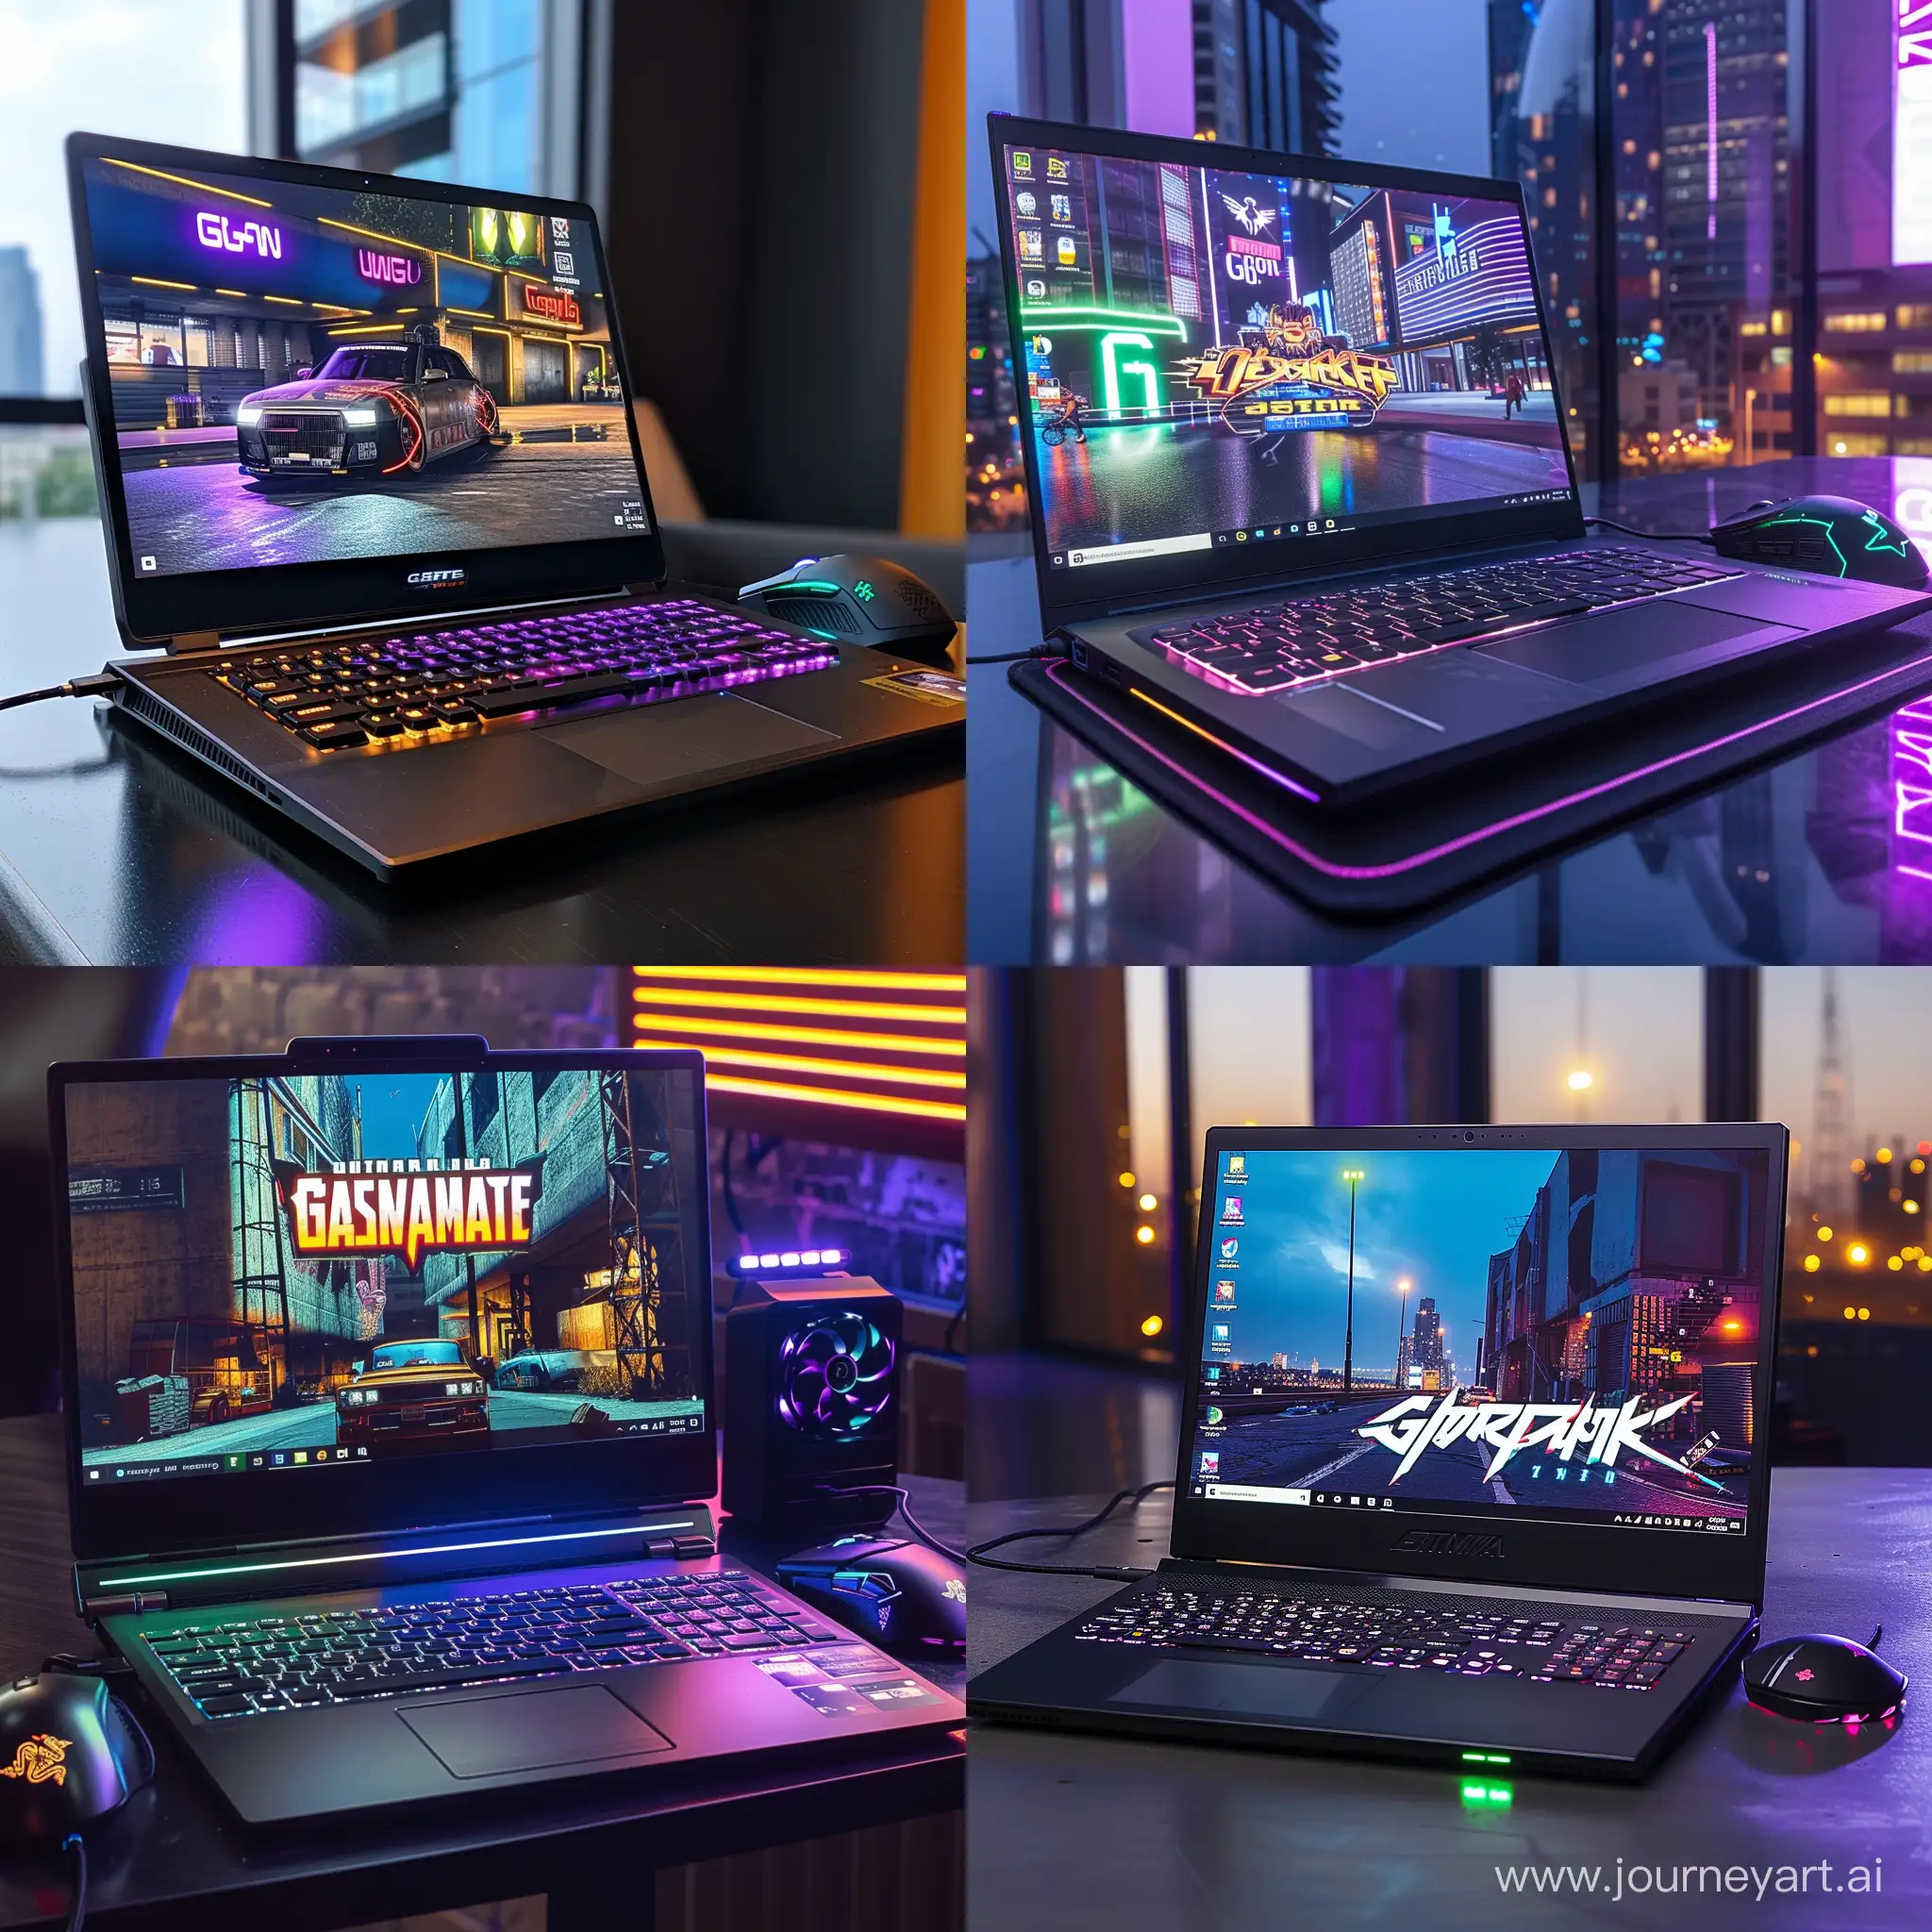 Futuristic-Gaming-Setup-Cyberpunk-Laptop-Mechanical-Keyboard-and-GTA-6